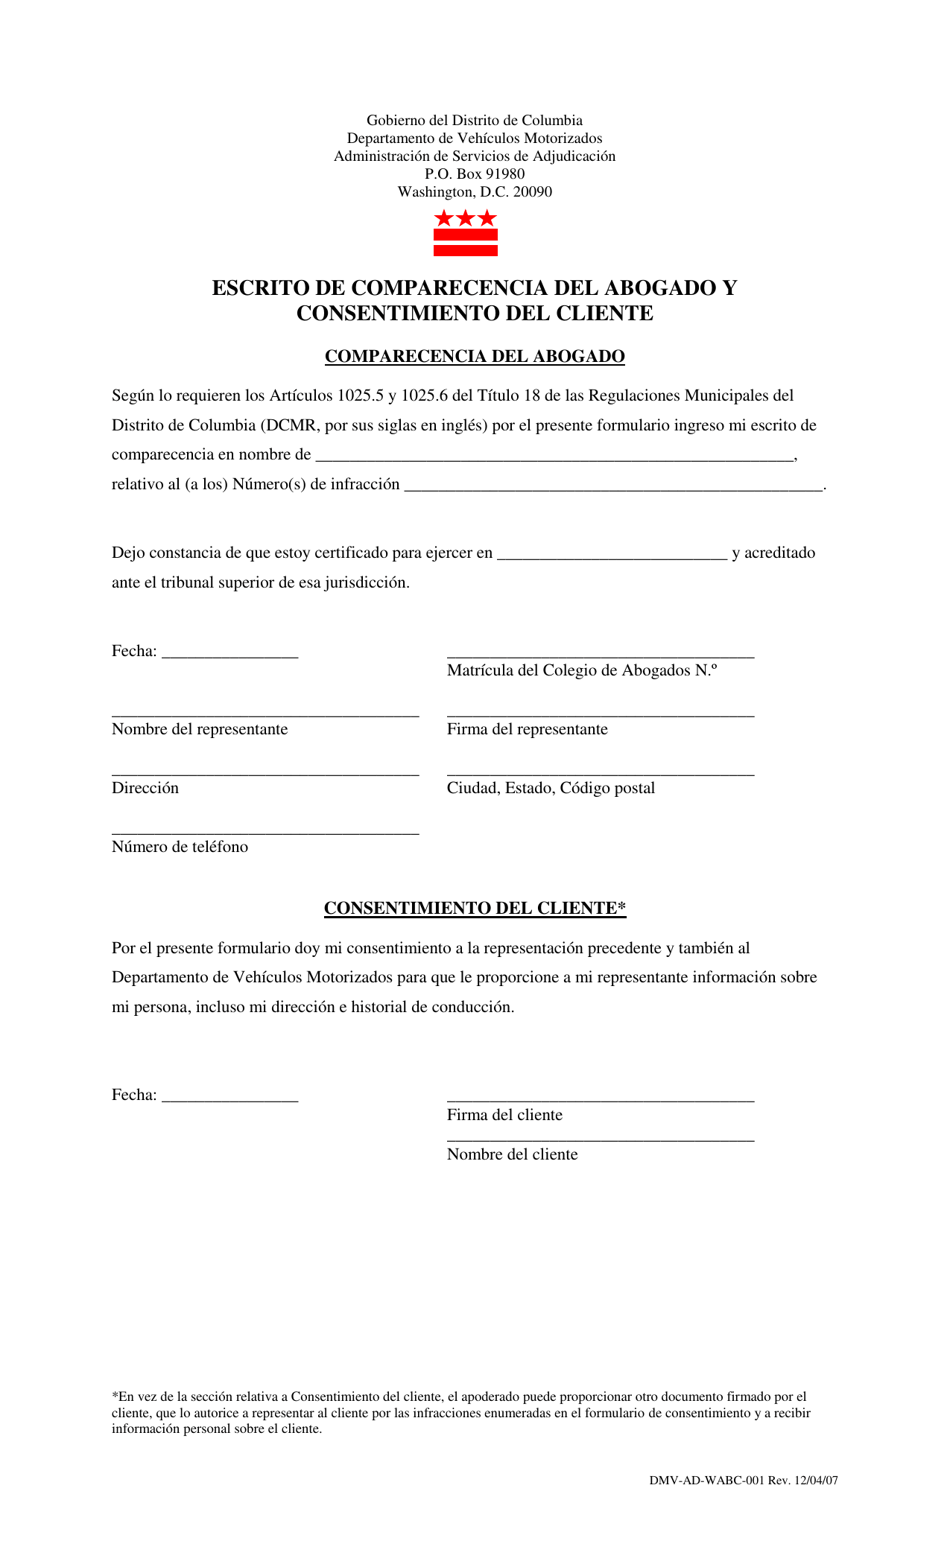 Formulario DMV-AD-WABC-001 Escrito De Comparecencia Del Abogado Y Consentimiento Del Cliente - Washington, D.C. (Spanish), Page 1